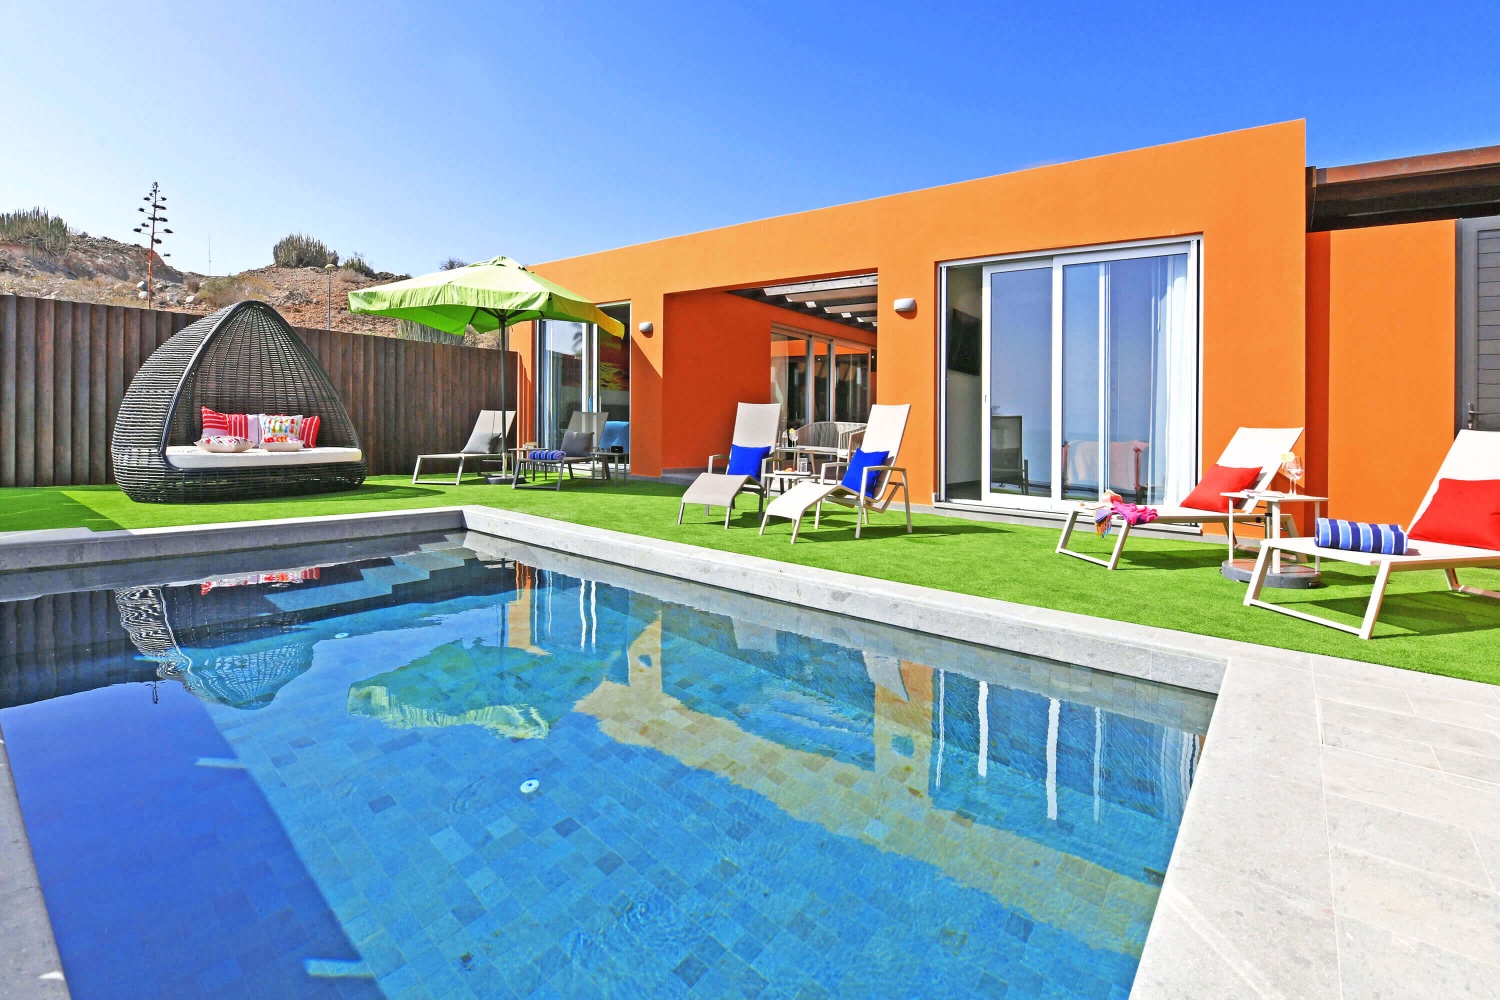 Moderne luxe bungalow met alle comfort, smaakvolle interieurs en een gezellige buitenruimte met zonnig terras, privézwembad en uitzicht op zee, evenals een patio met eethoek